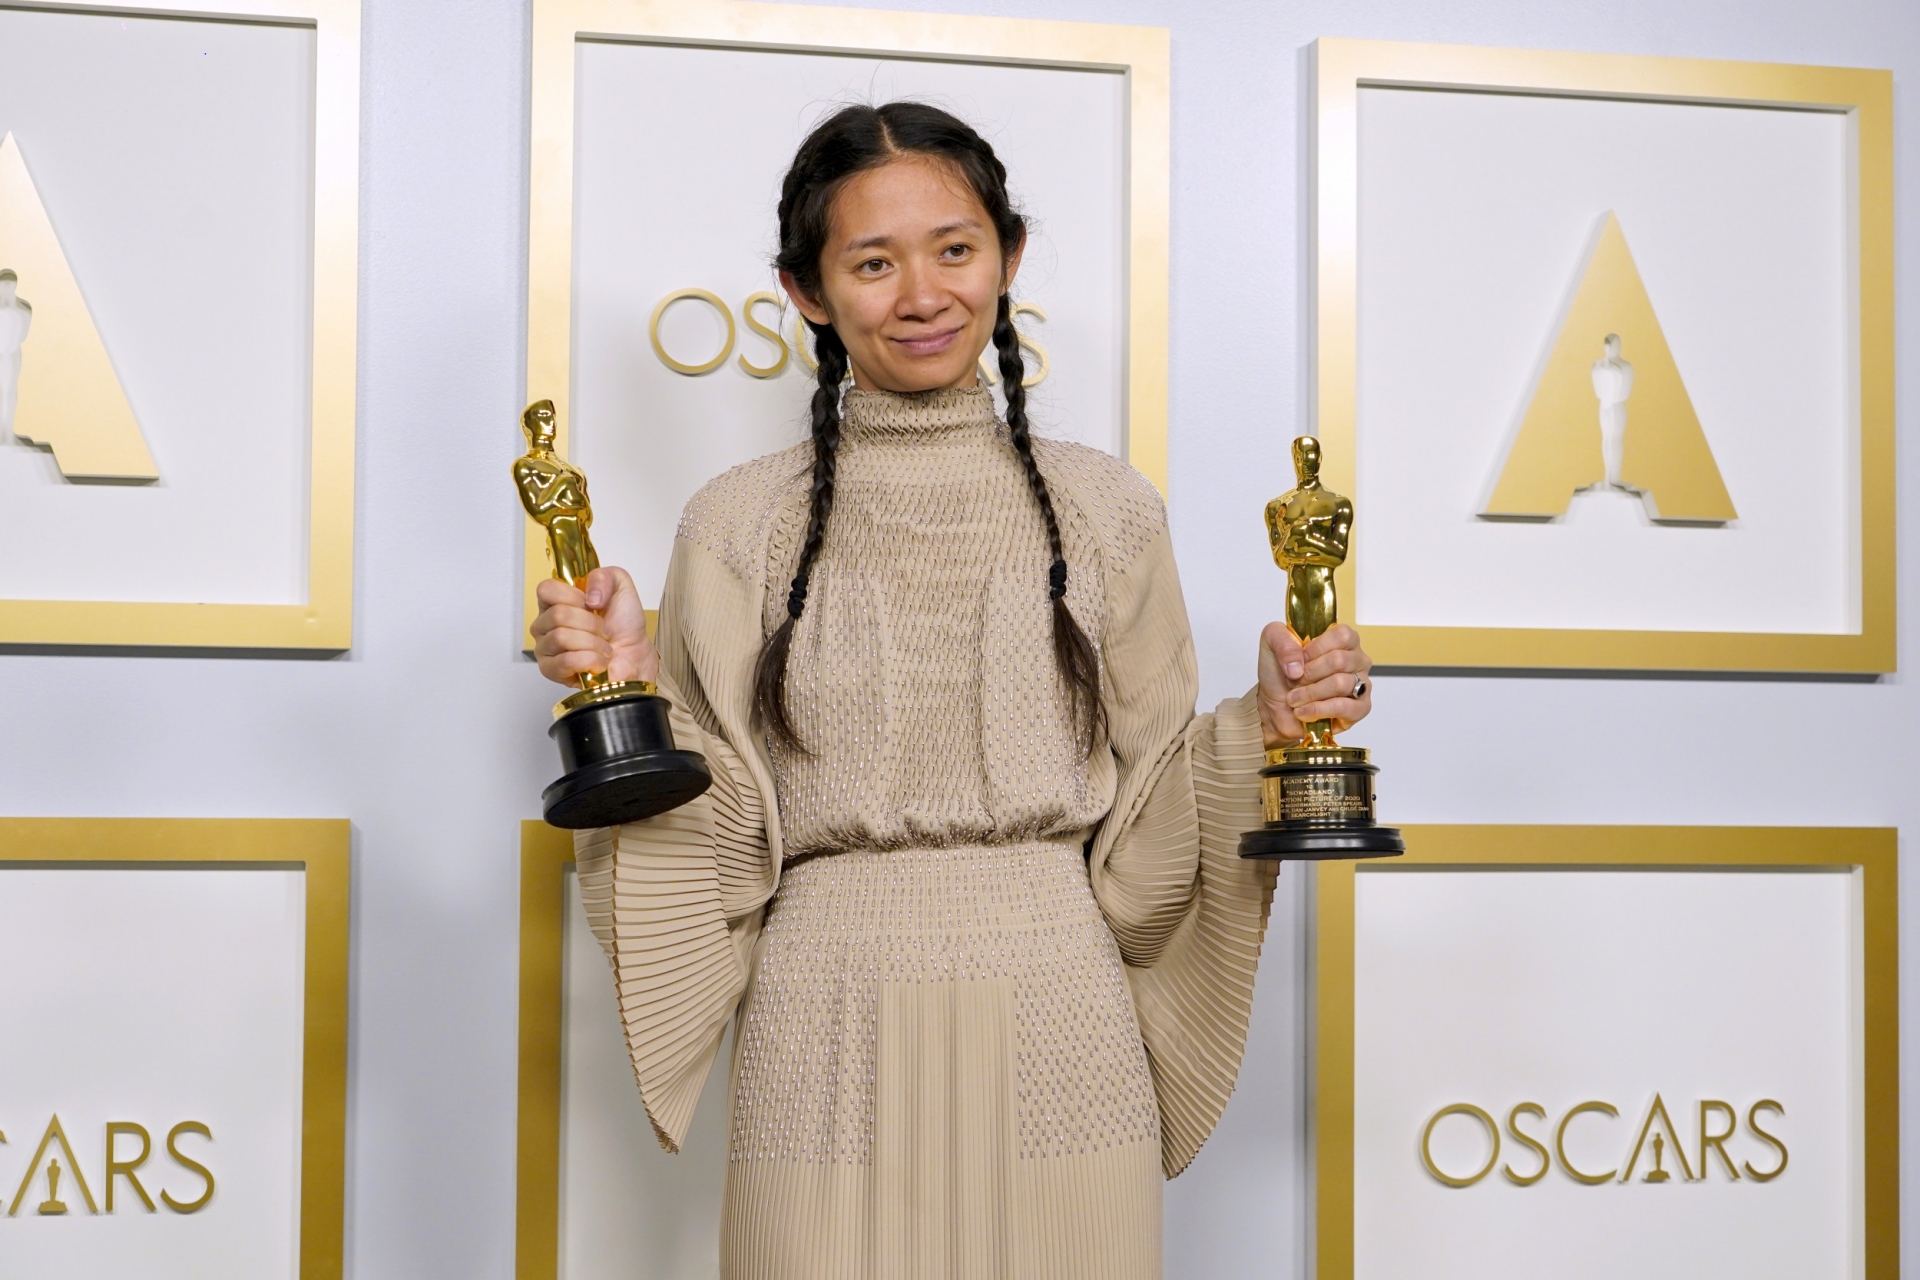 Chloé Zhao sẽ tiếp nối những thành công sau tượng vàng Oscar để cống hiến cho khán giả thêm nhiều tác phẩm để đời khác.